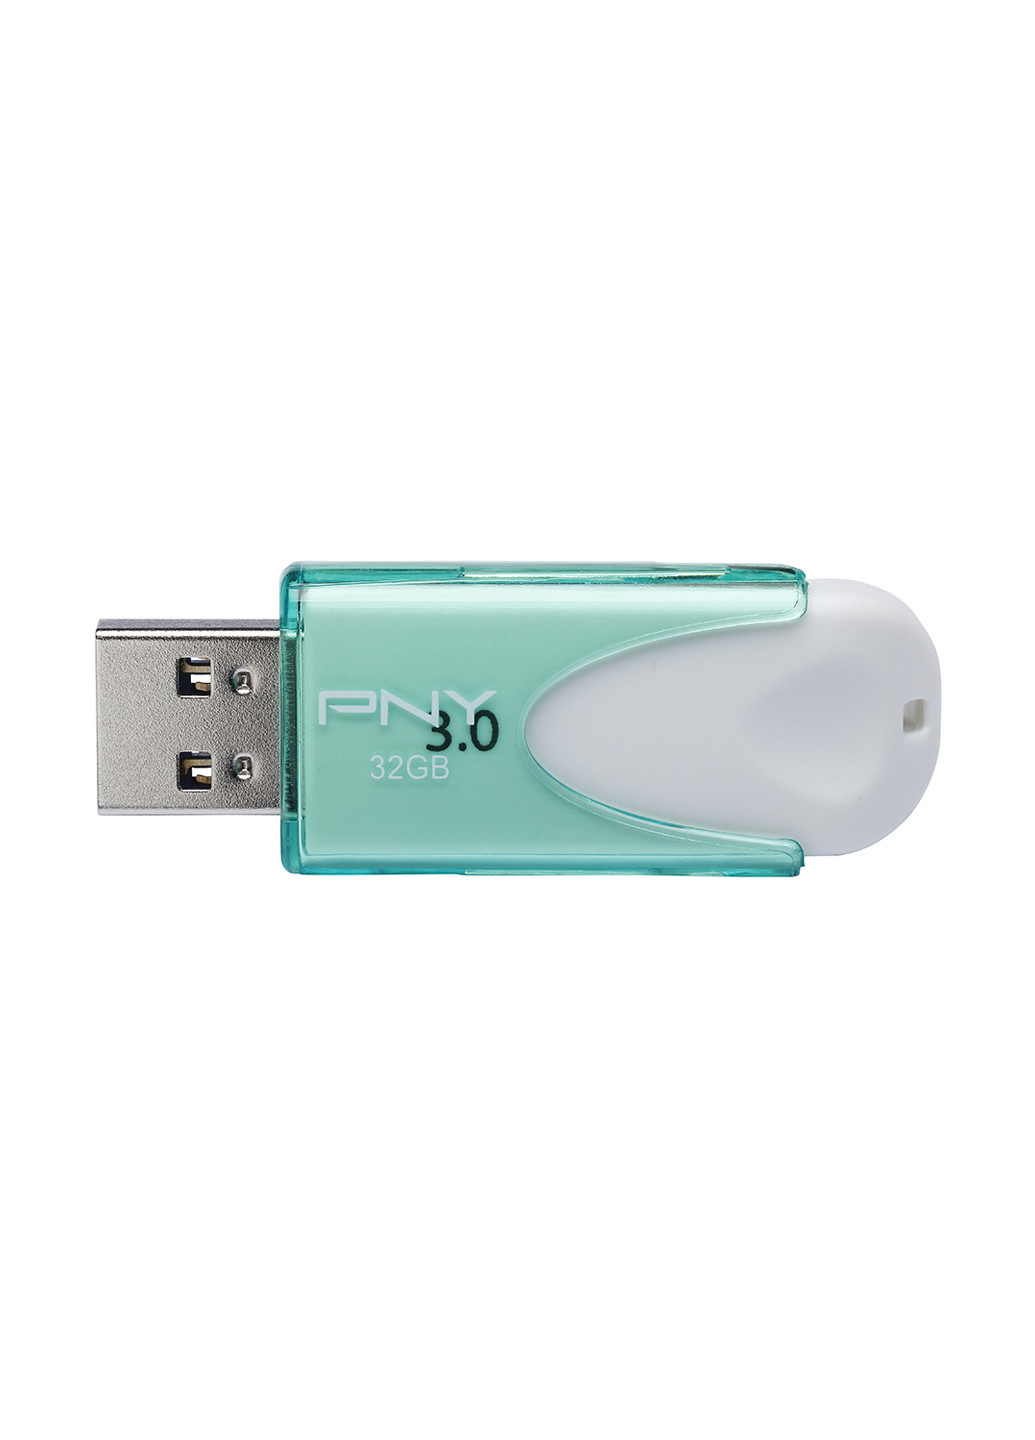 Флеш память USB Attache 4 32GB Green (FD32GATT430-EF) PNY флеш память usb pny attache 4 32gb green (fd32gatt430-ef) (135526998)